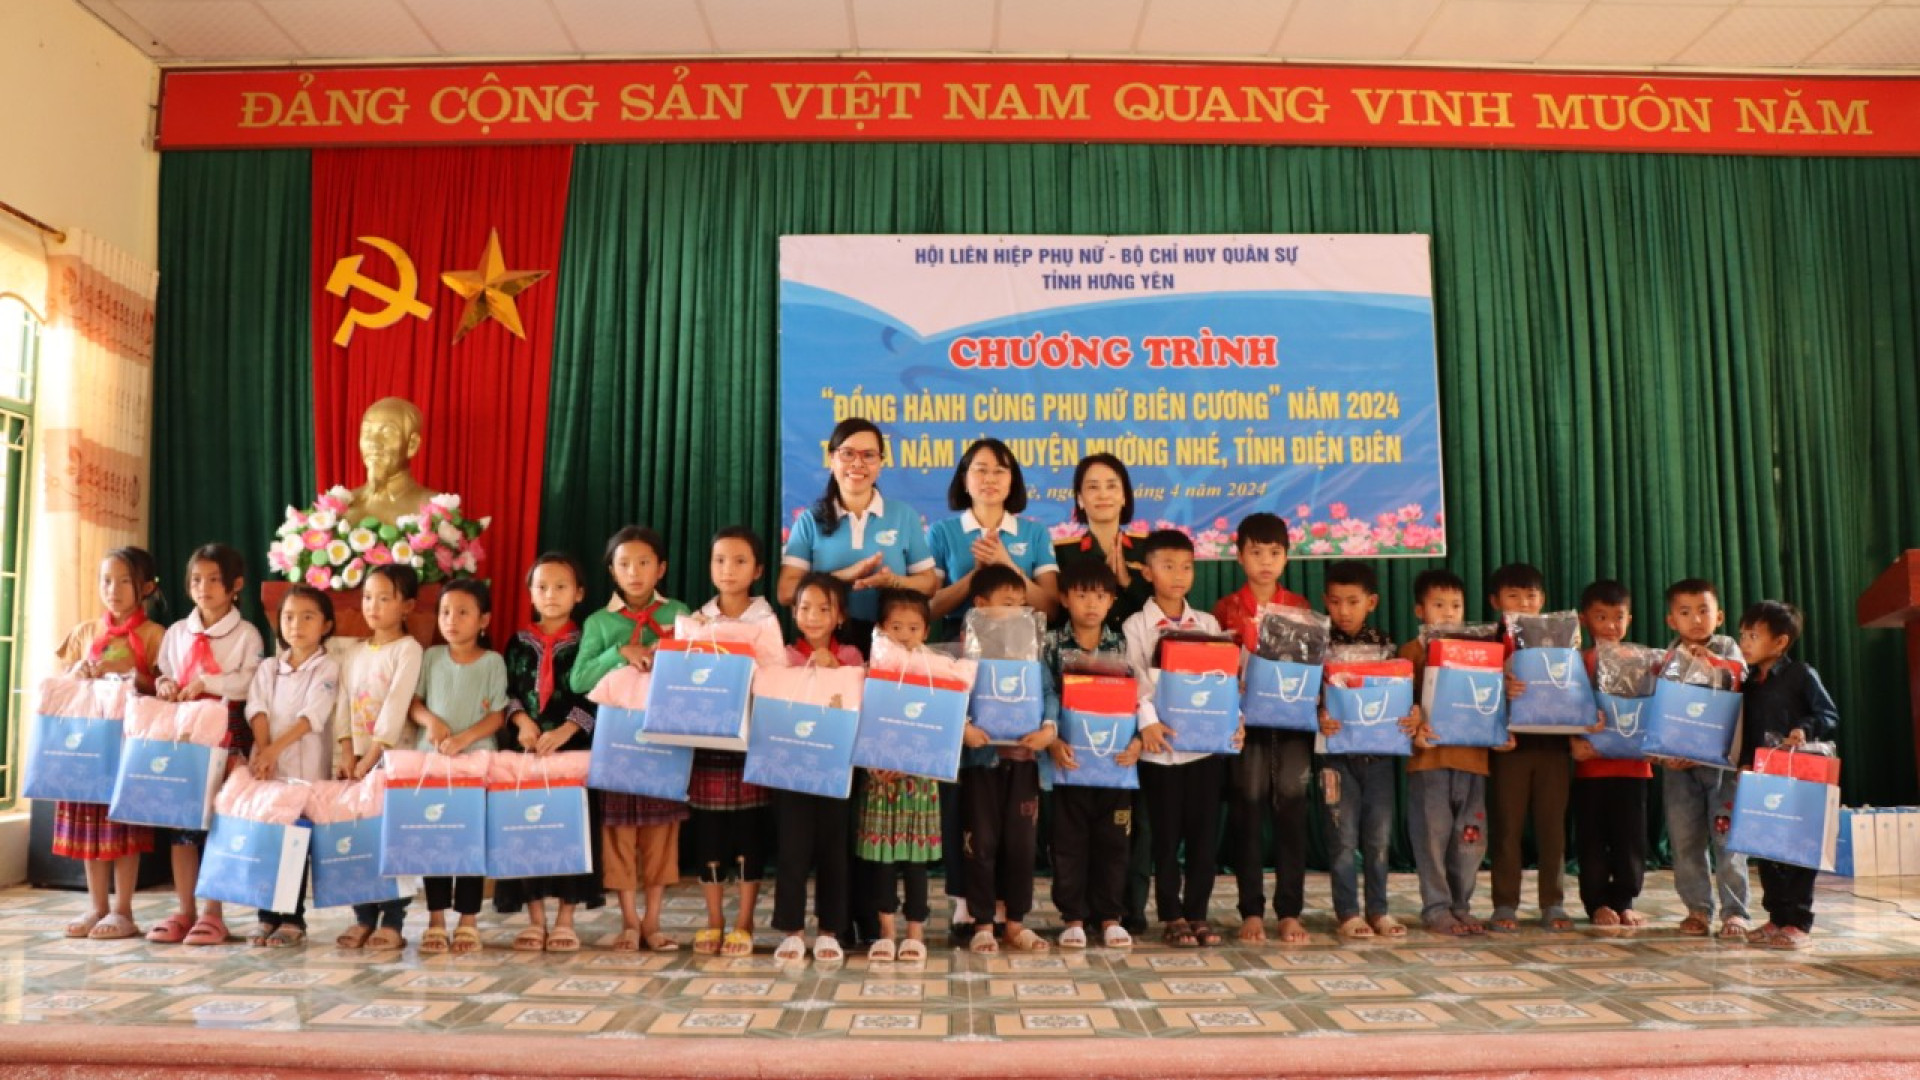 Phụ nữ Bộ CHQS tỉnh Hưng Yên phối hợp thực hiện Chương trình “Đồng hành cùng phụ nữ biên cương”